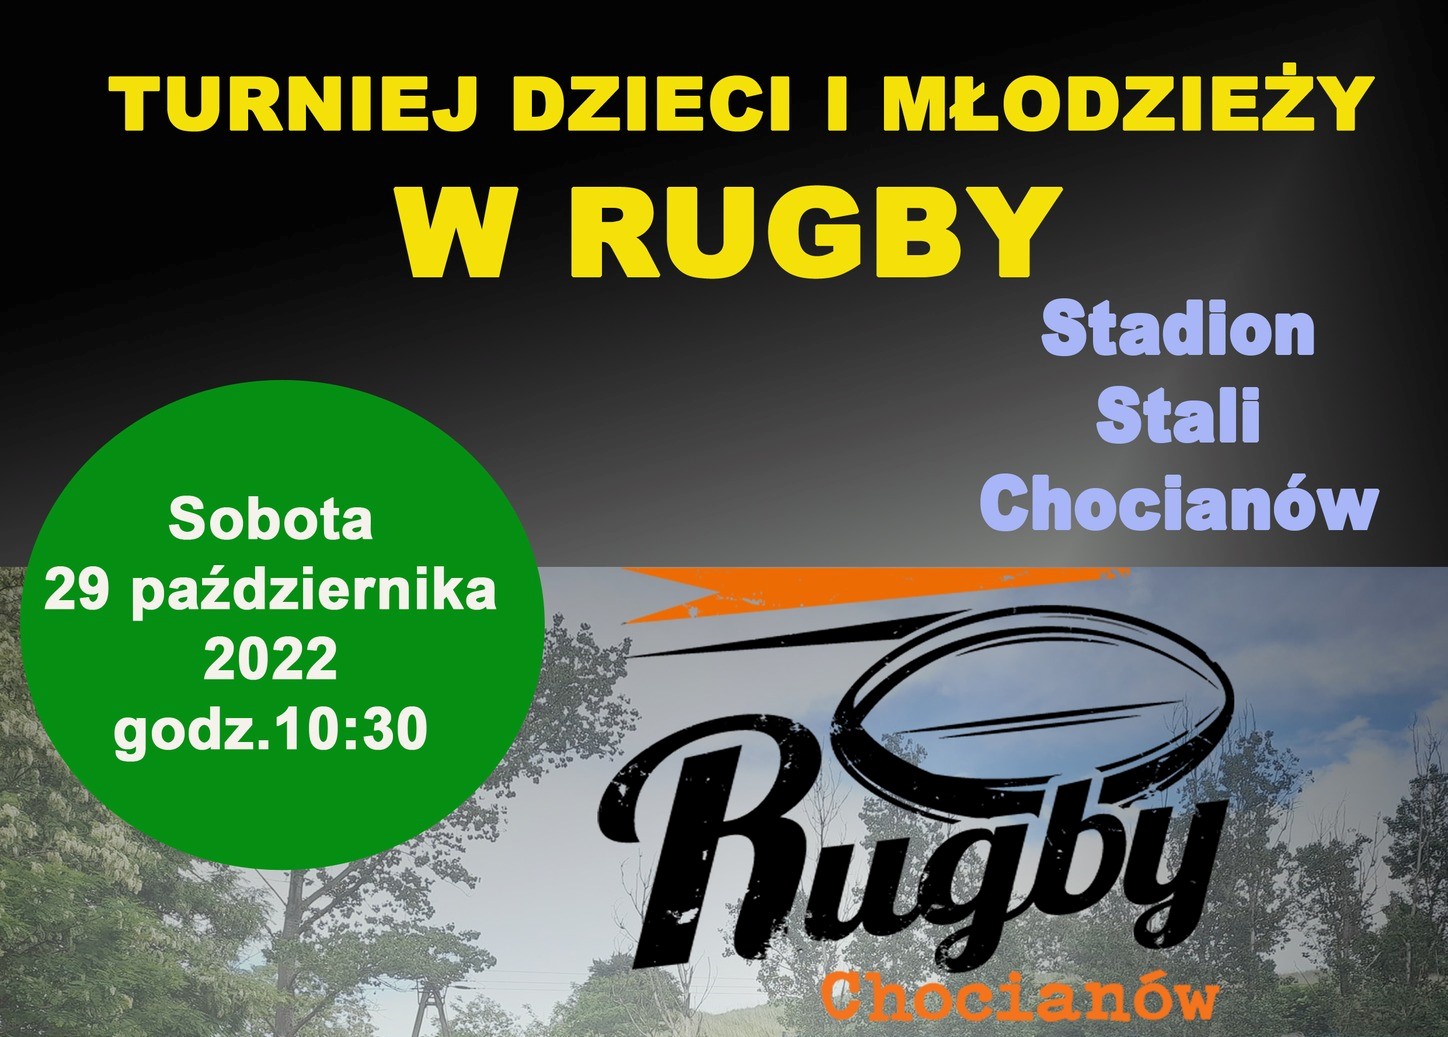 Turniej Rugby w Chocianowie 